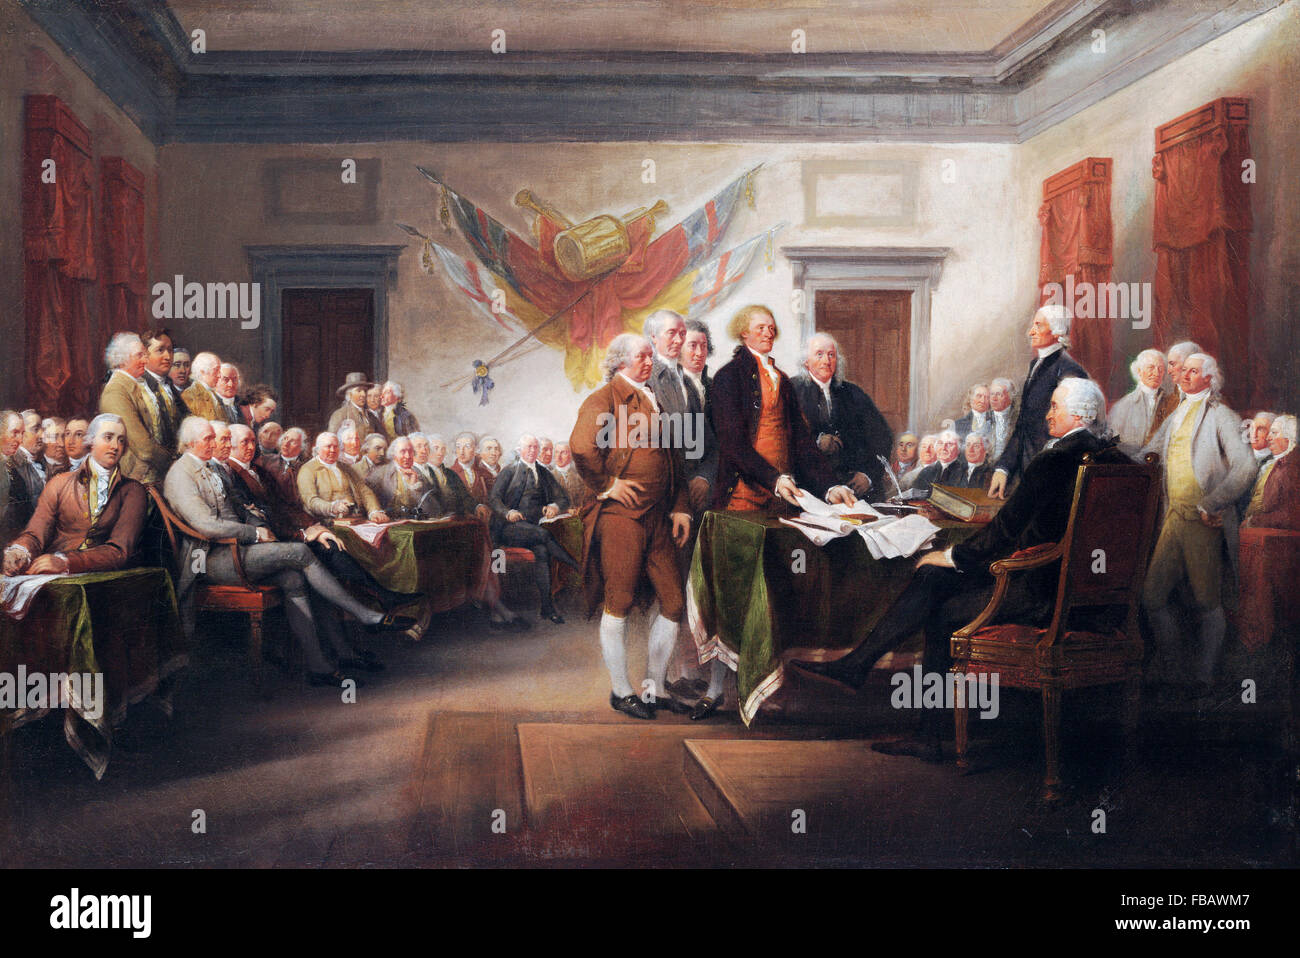 Déclaration d'indépendance. La signature de la Déclaration d'indépendance des États-Unis en 1776 - une peinture de John Trumbull Banque D'Images